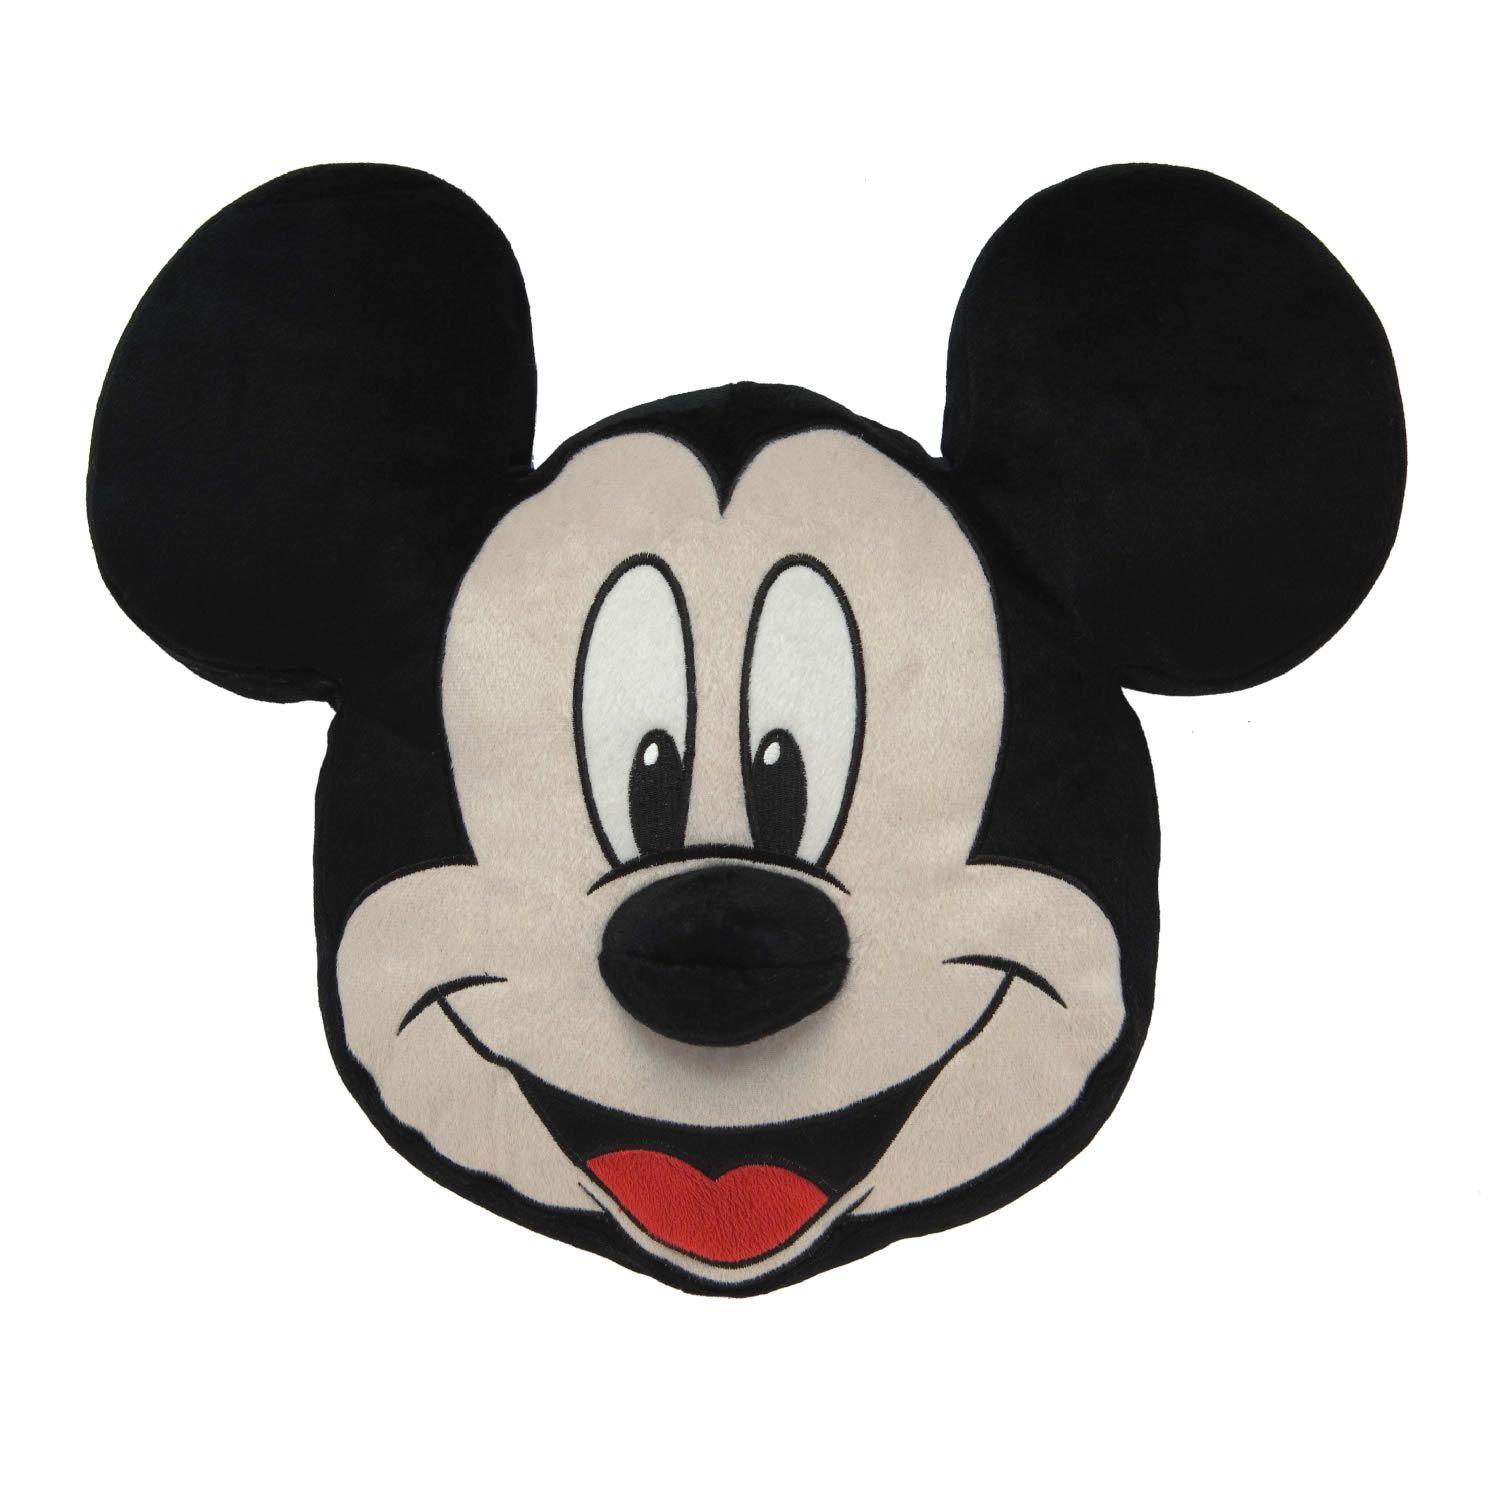 1500x1500 Hình ảnh Miễn phí về Đầu Chuột Mickey, Tải xuống Clip Art Miễn phí, Miễn phí